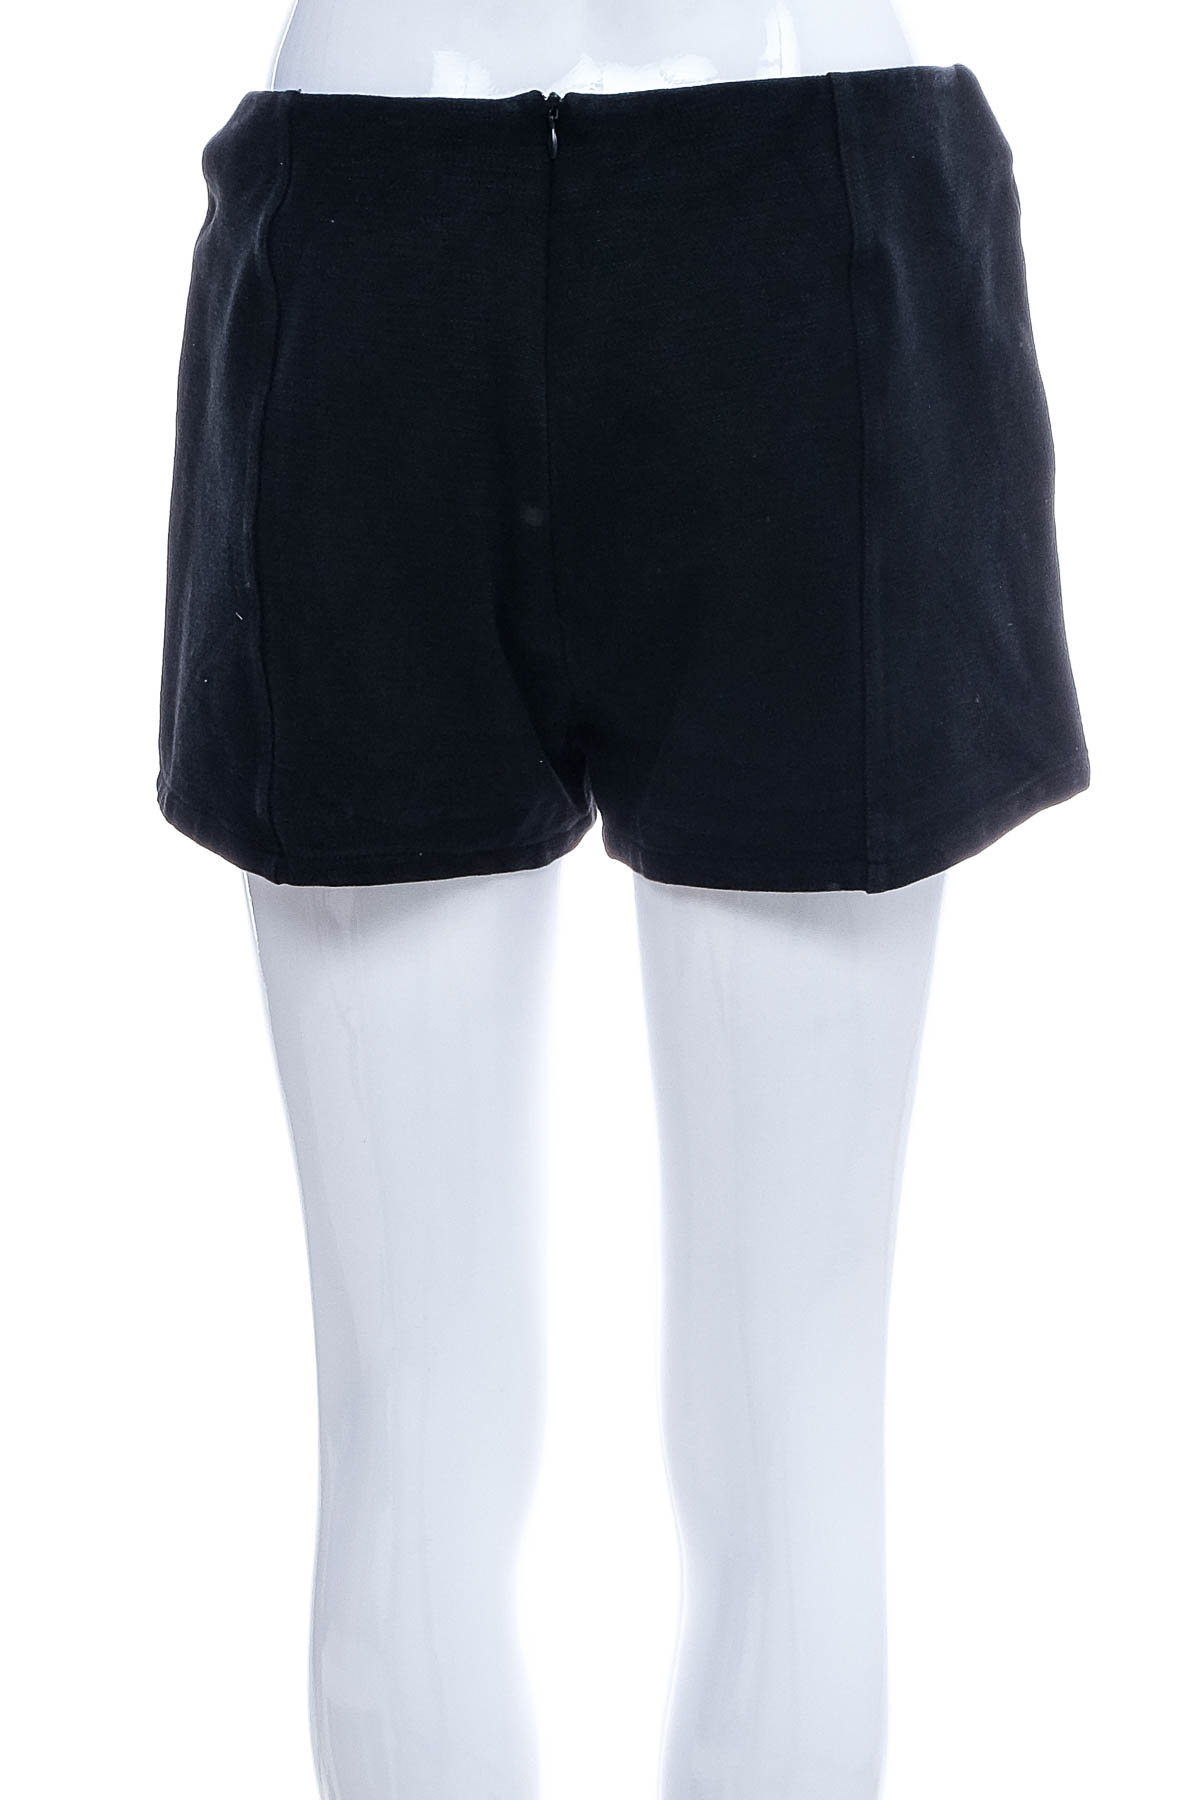 Female shorts - Qbg - 1